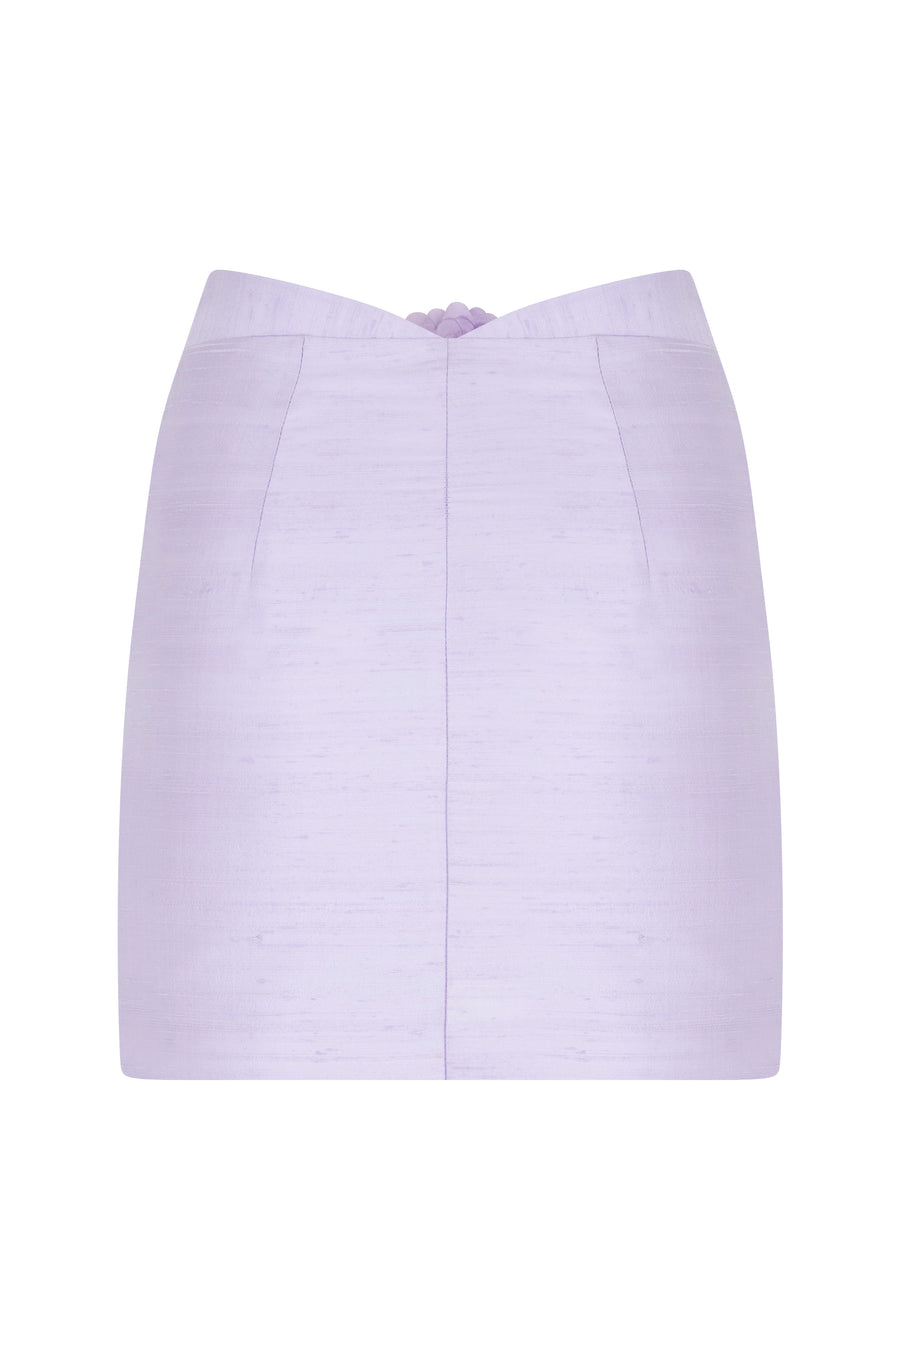 Dahlia Floral Skirt